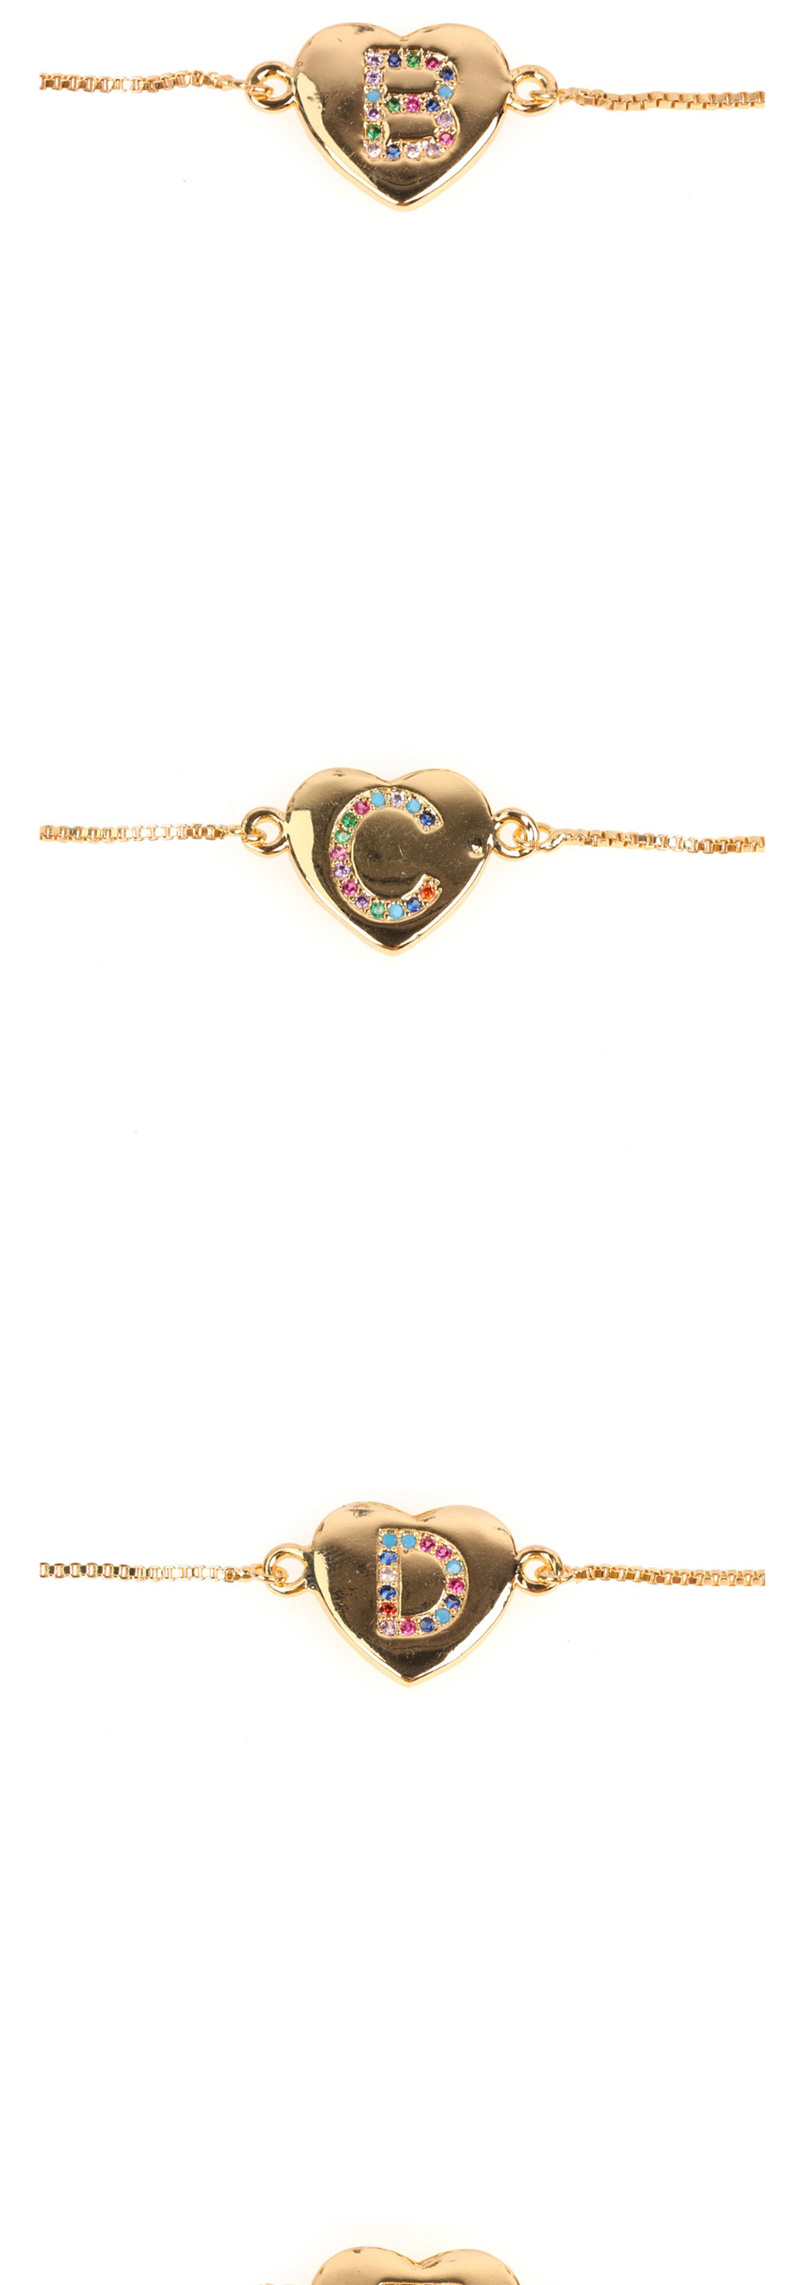 Fashion V Golden Heart Bracelet With Diamonds And Letters,Bracelets